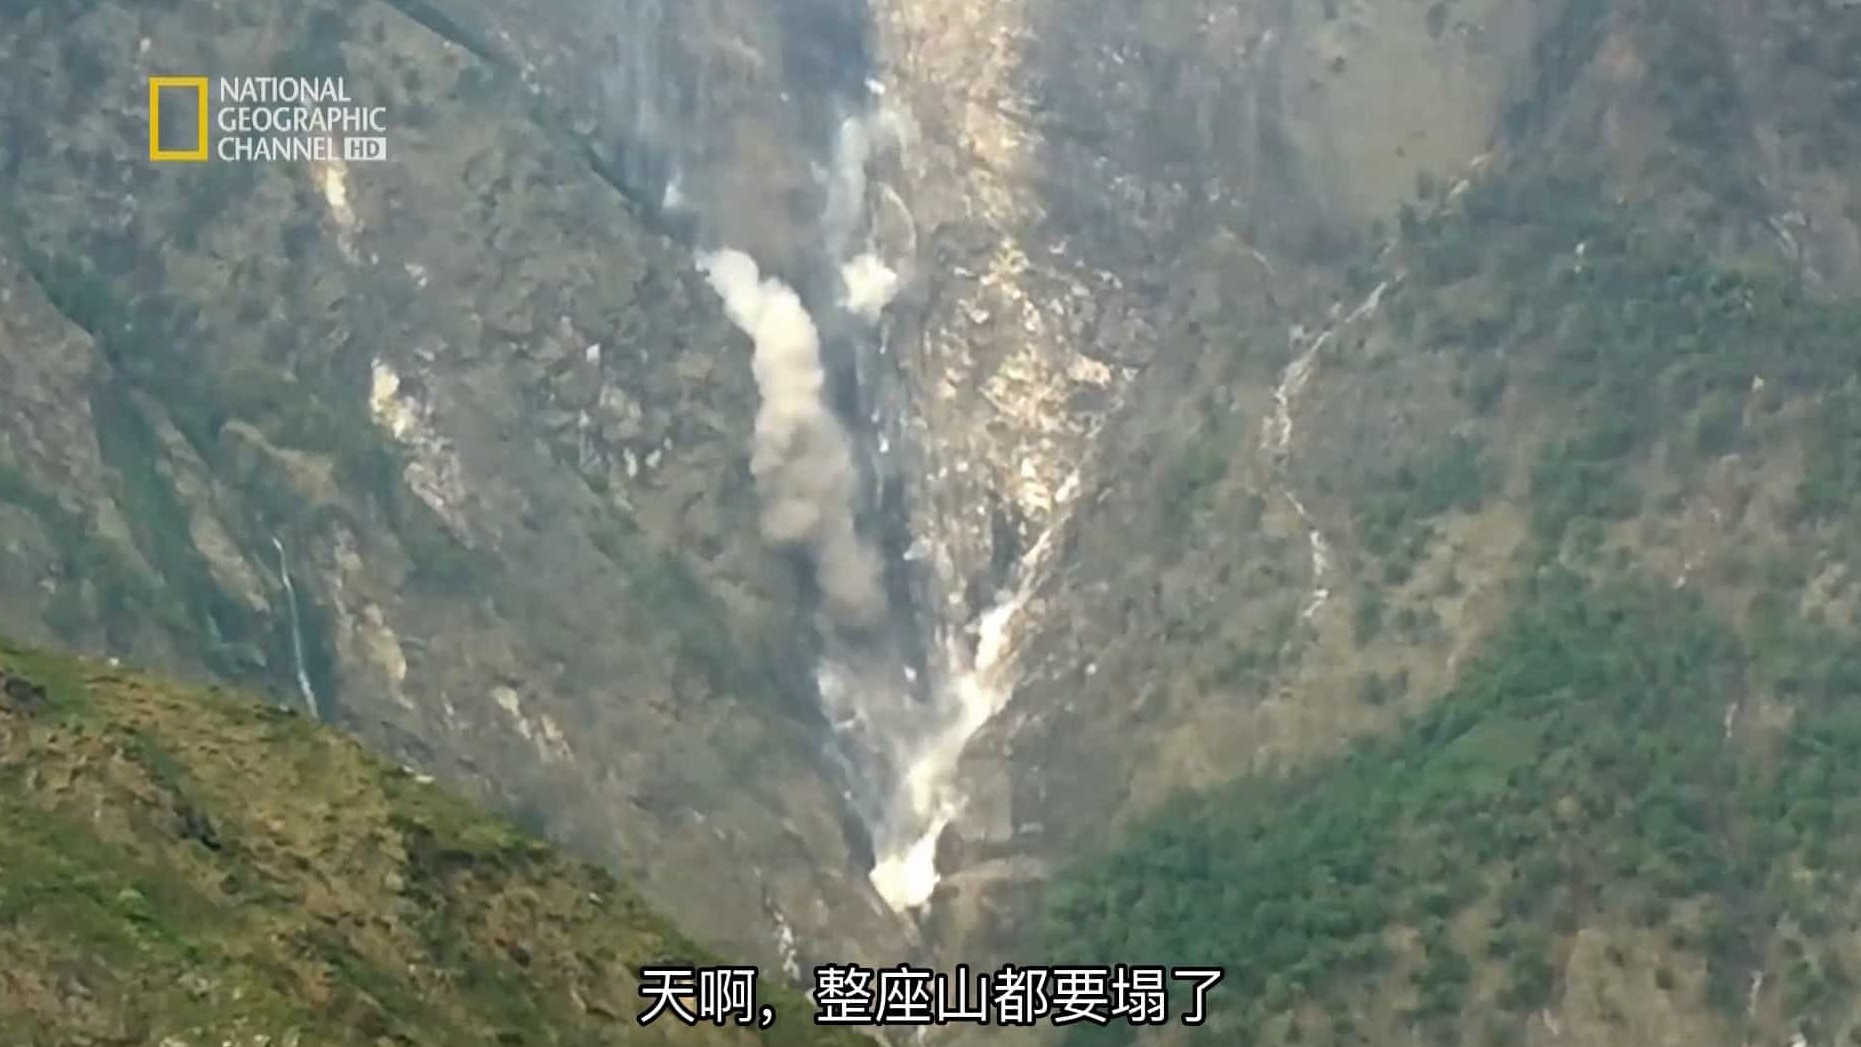 国家地理频道《珠穆朗玛峰大地震 Earthquake on Everest》全1集 英语中字 1080P高清网盘下载